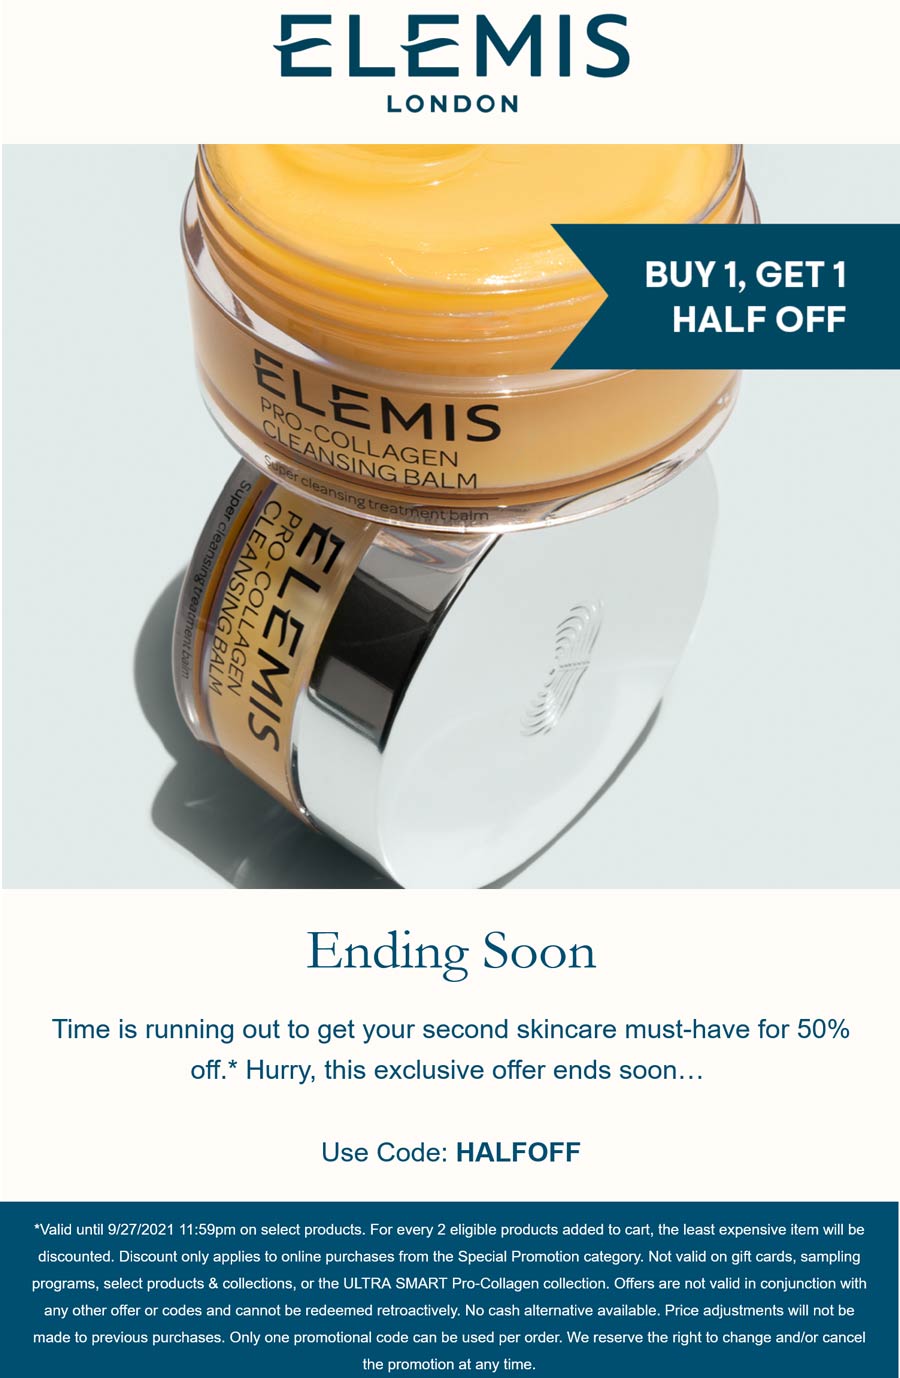 Elemis stores Coupon  Second skincare 50% off today at Elemis via promo code HALFOFF #elemis 